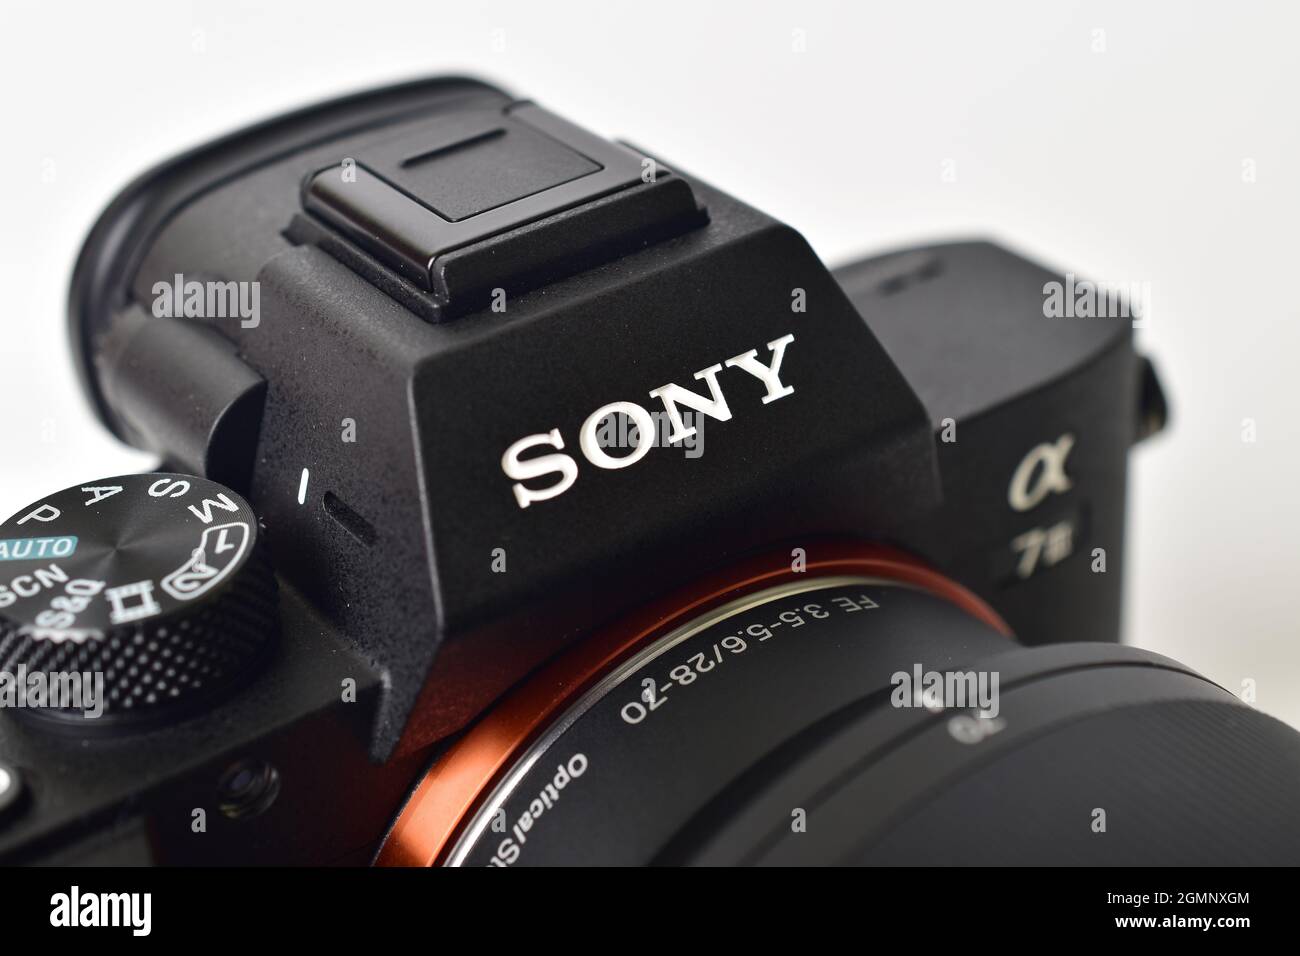 Delhi, india - September 7, 2020: close up of Sony logo on camera Stock Photo